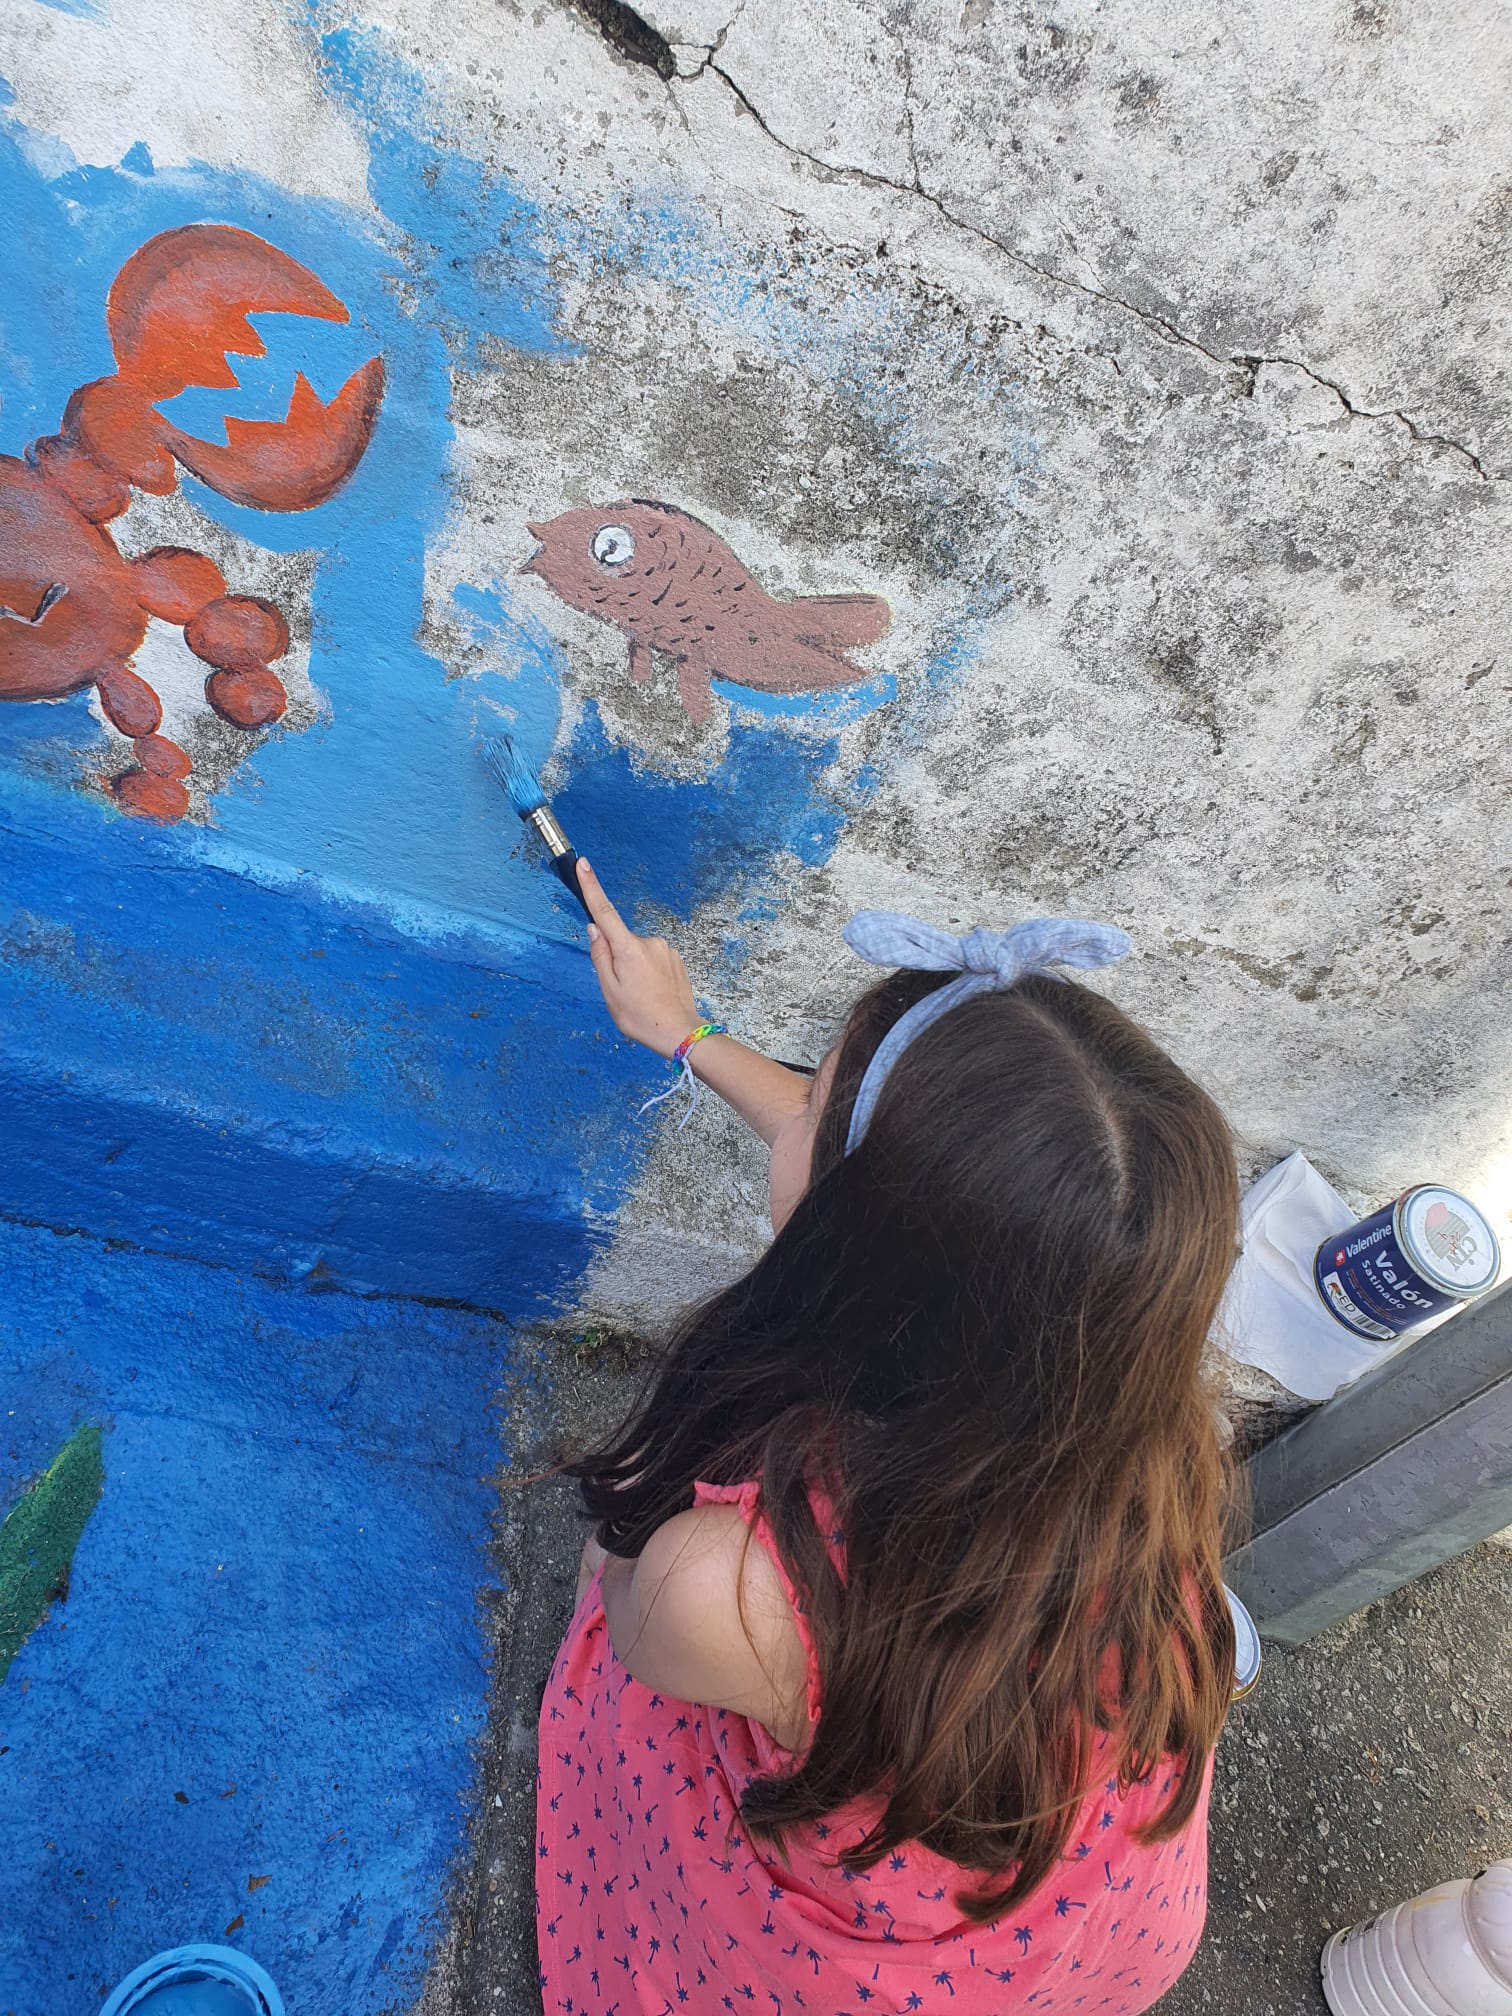 Fundo Marinho<br />
Os alunos pintam de azul o fundo marinho representativo do oceano.